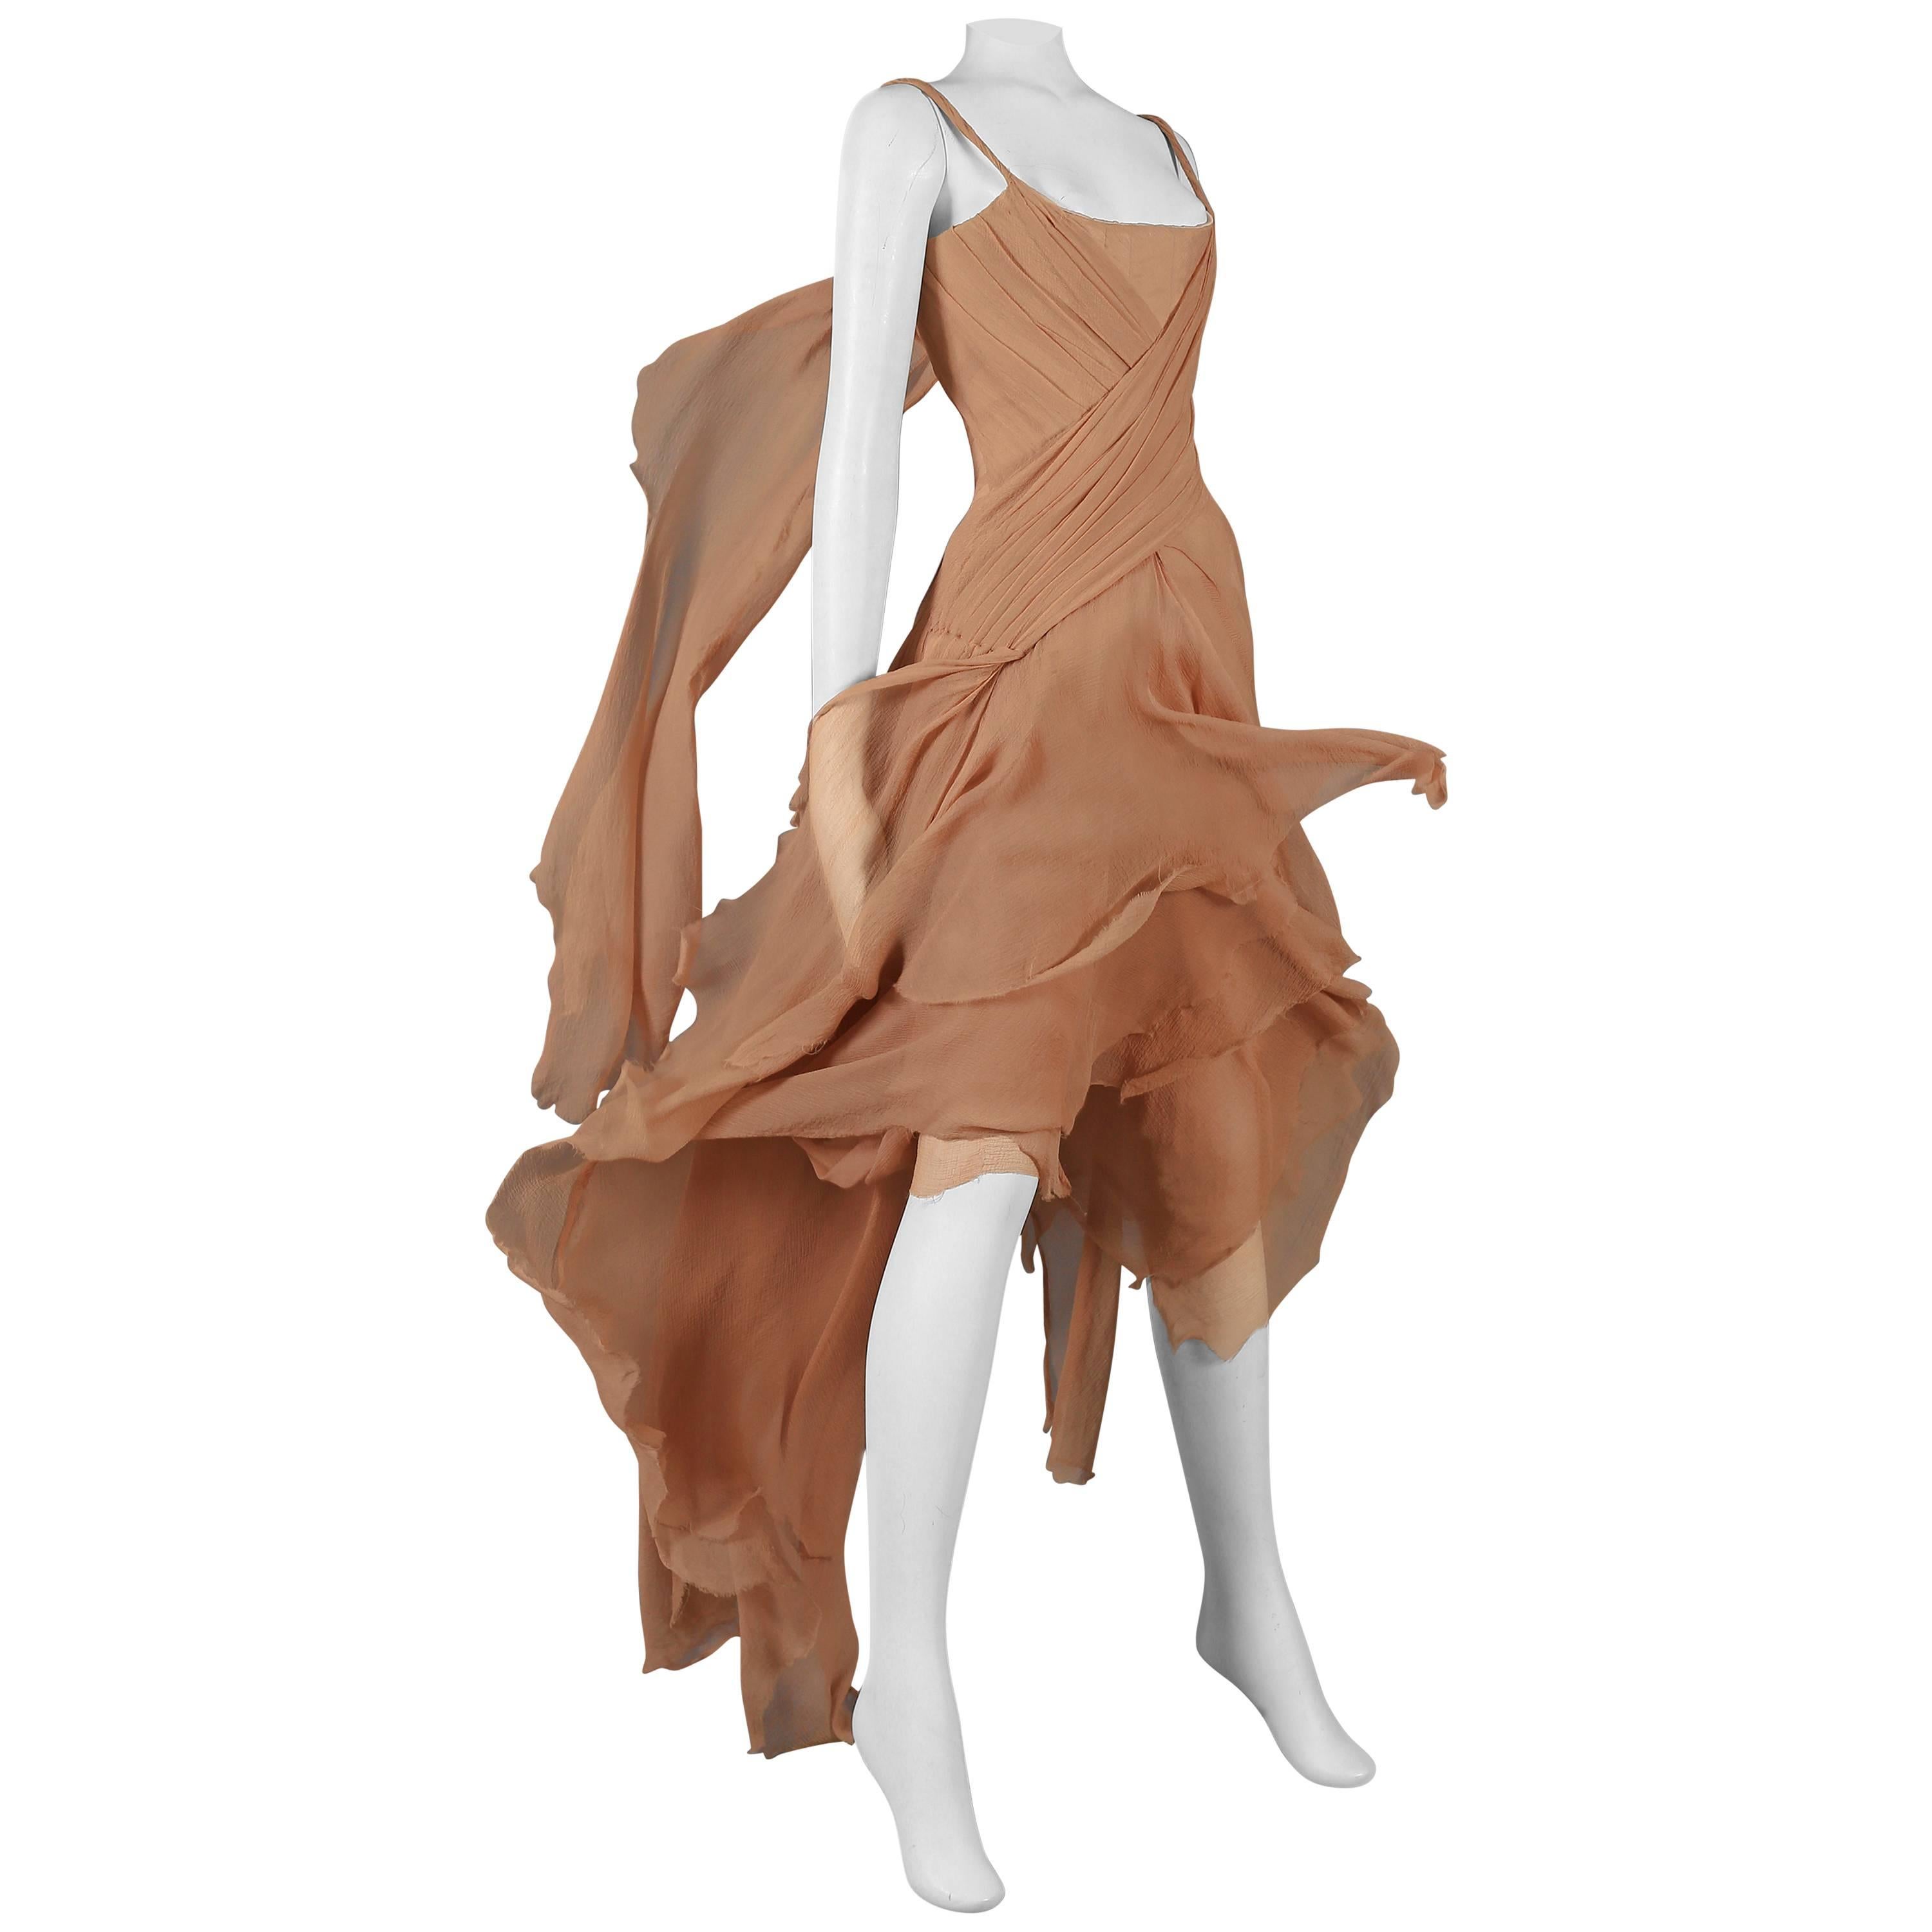 Alexander McQueen nude silk chiffon 'Irere' evening gown, circa 2003